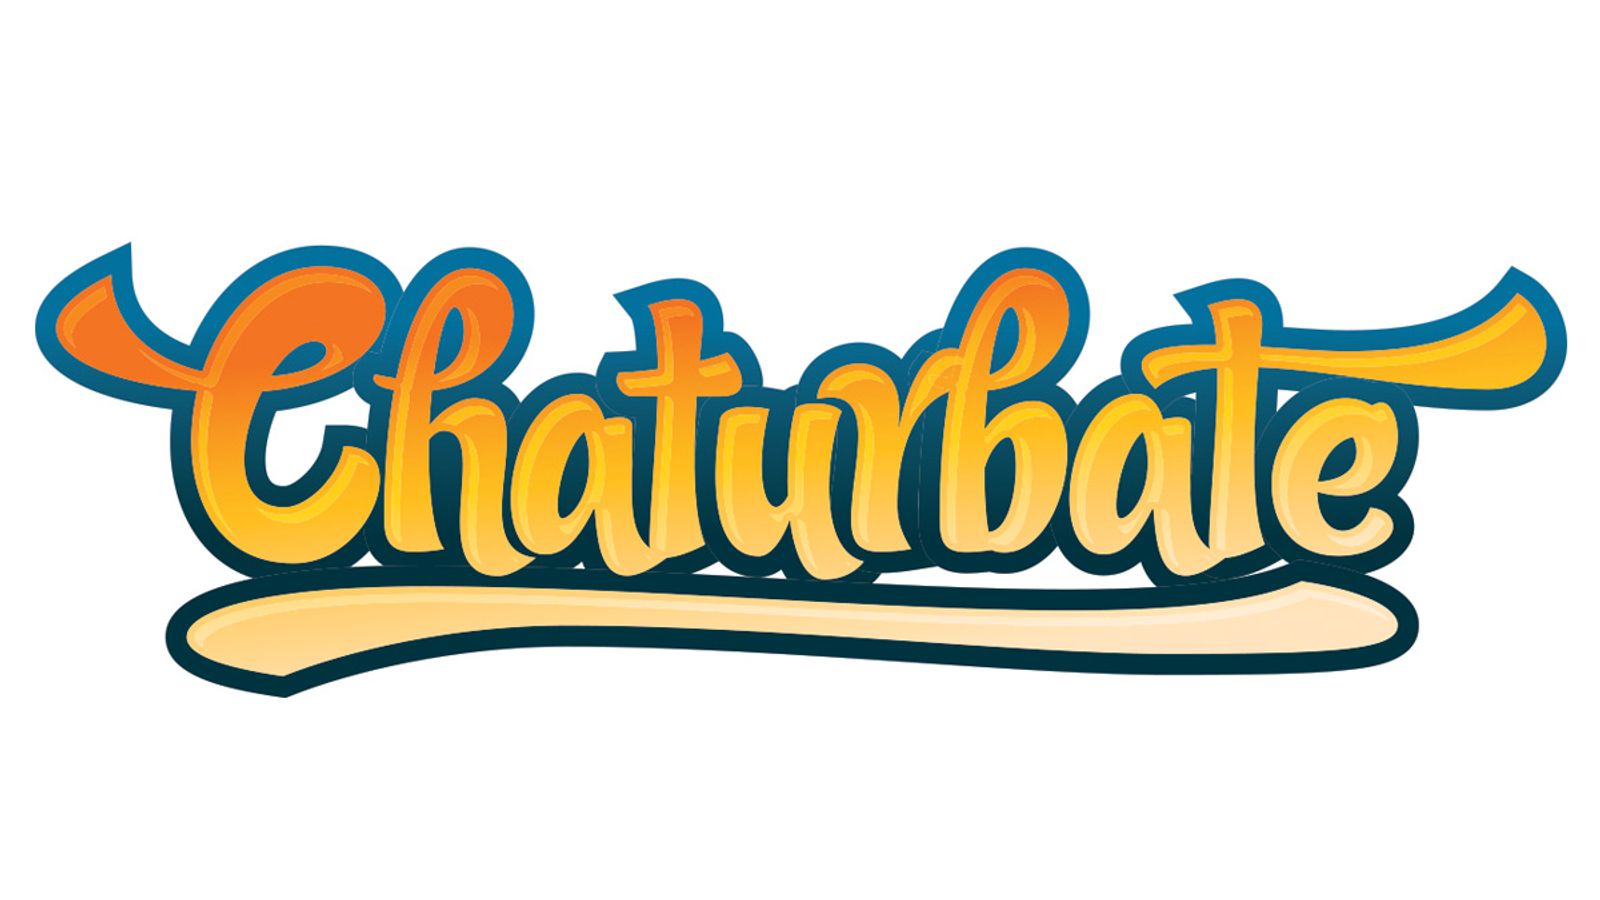 Chaturbate.com.